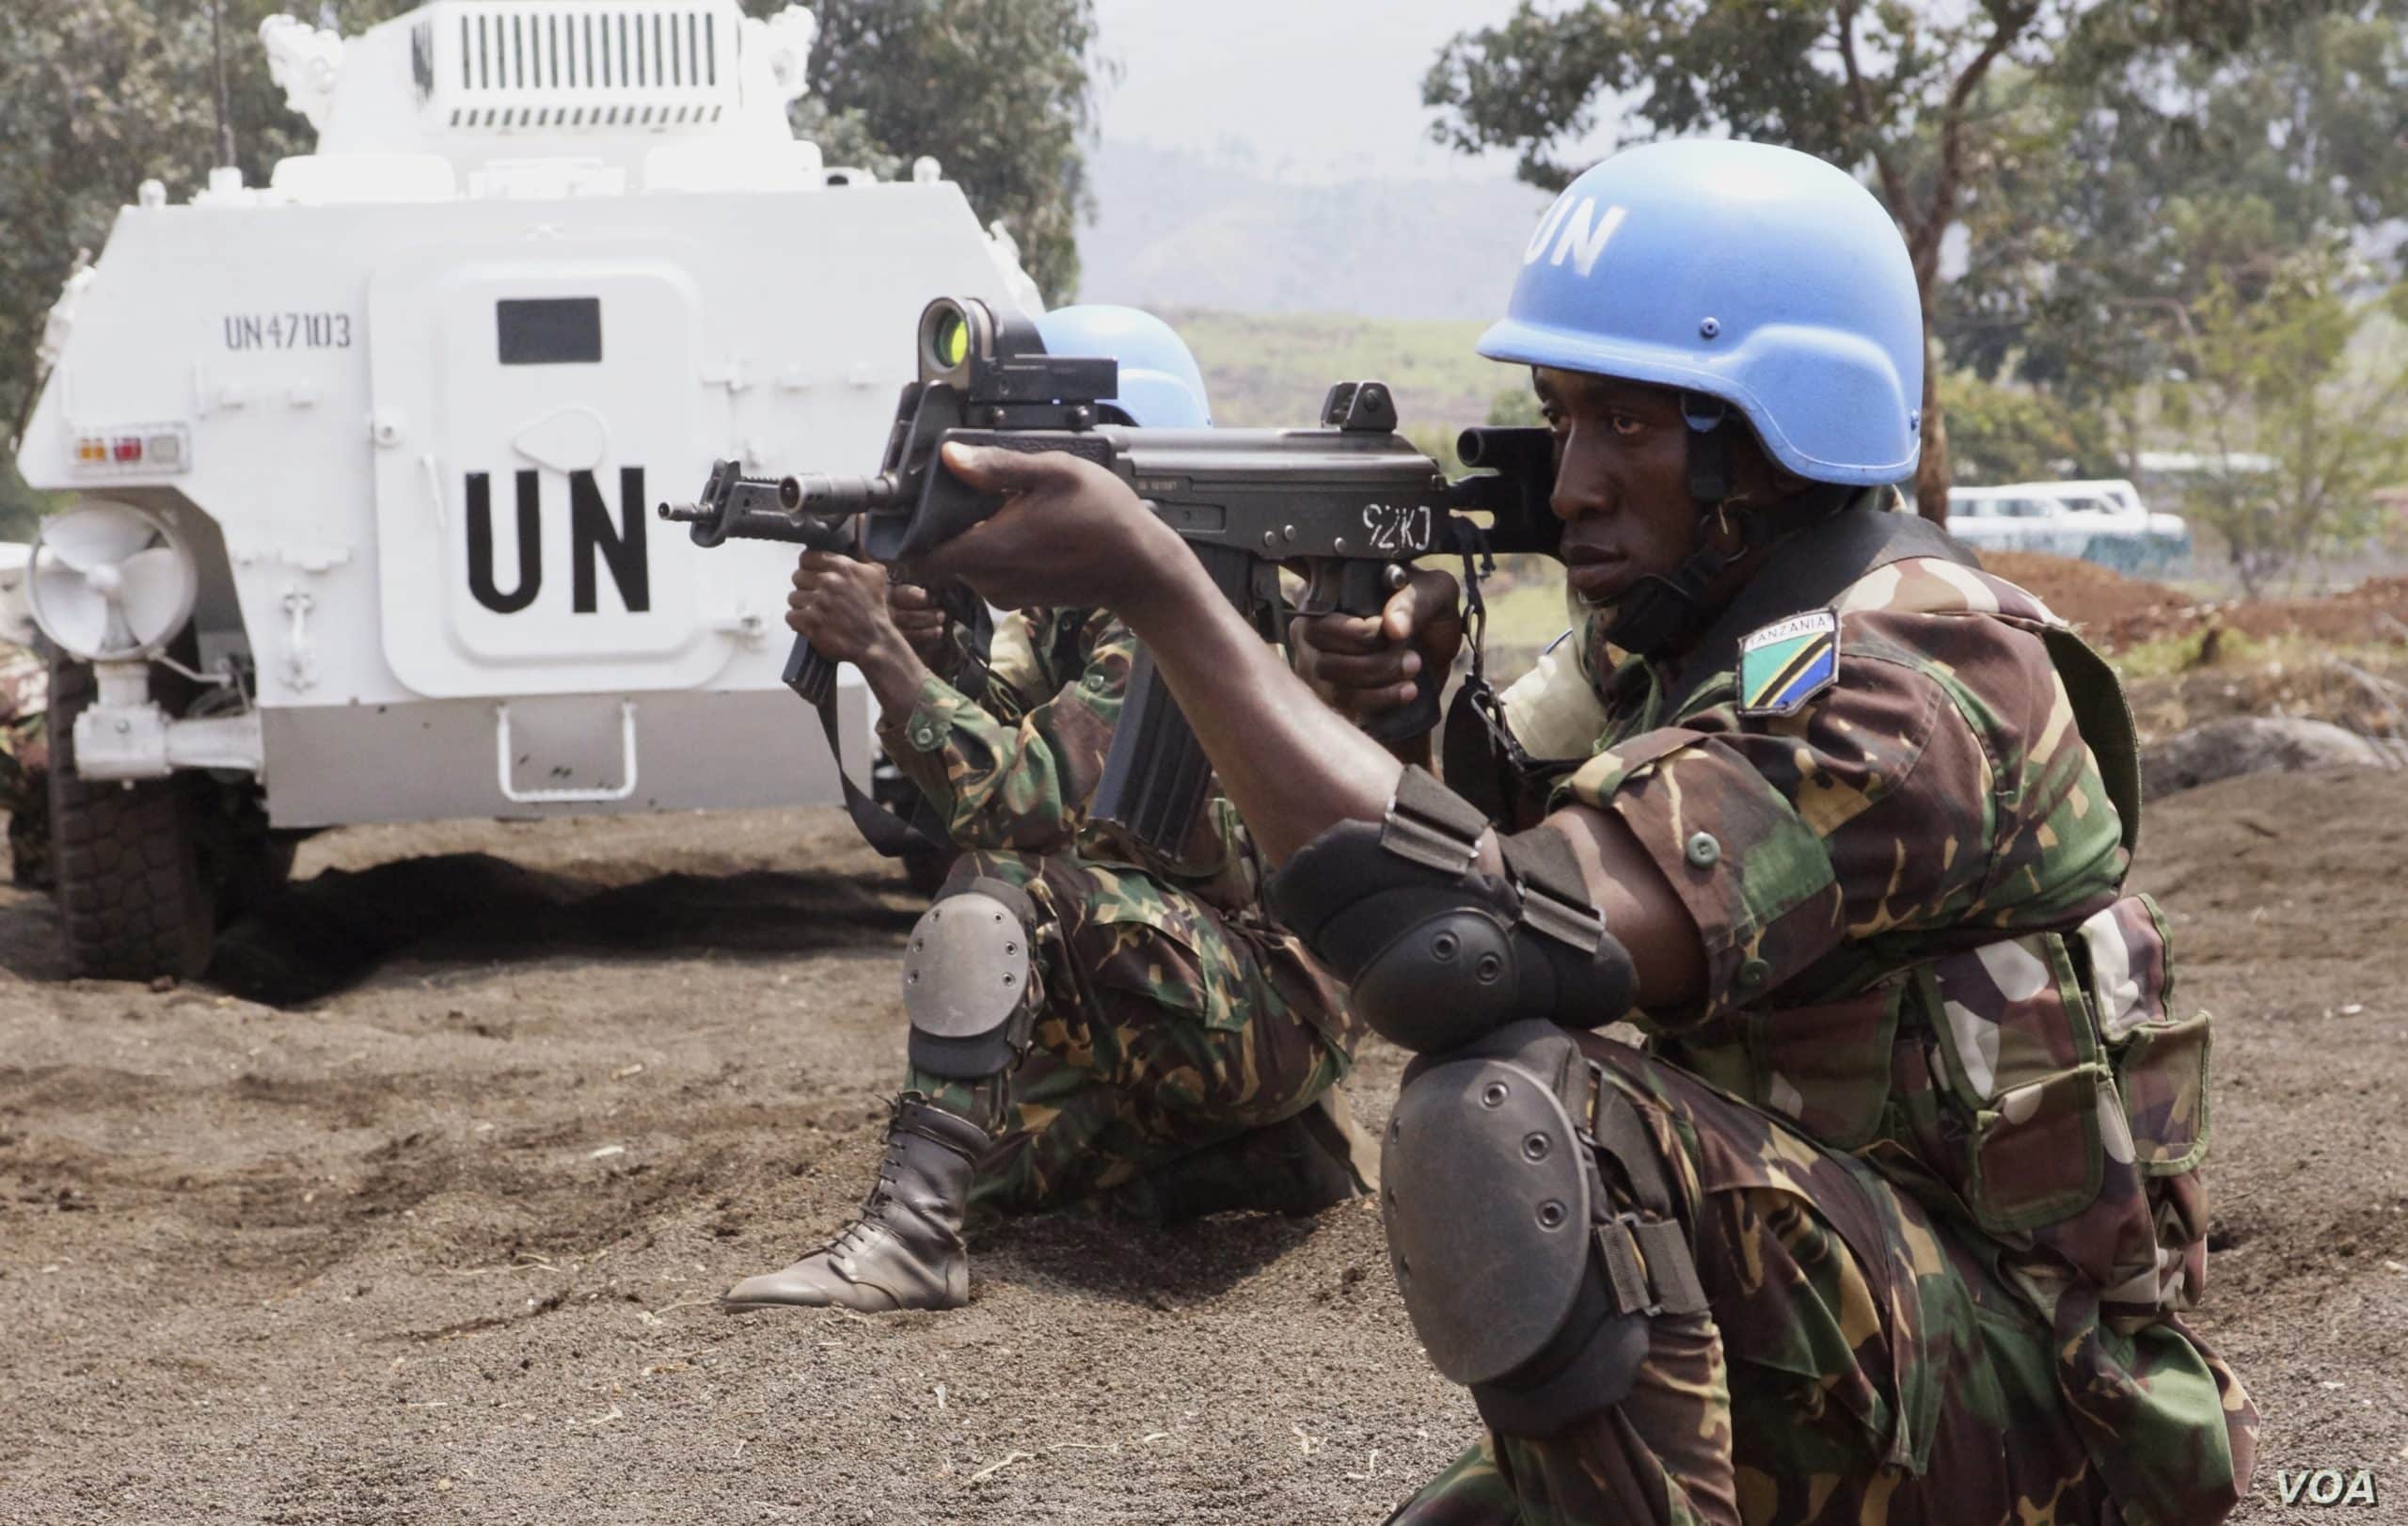 Væpnede FN styrker i en konflikt.